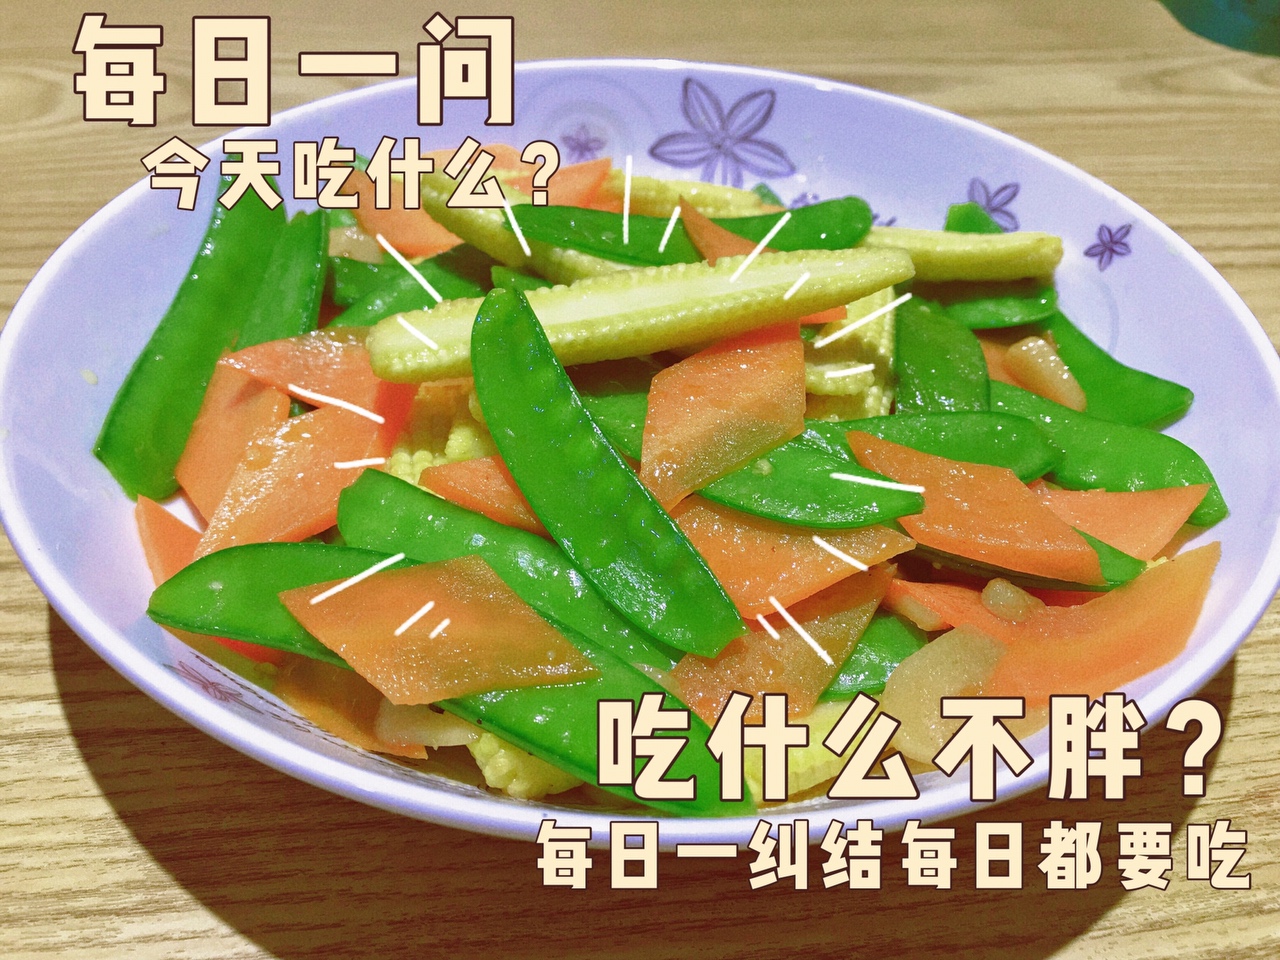 低热量高膳食纤维高维生素的简单素菜—玉米笋炒荷兰豆